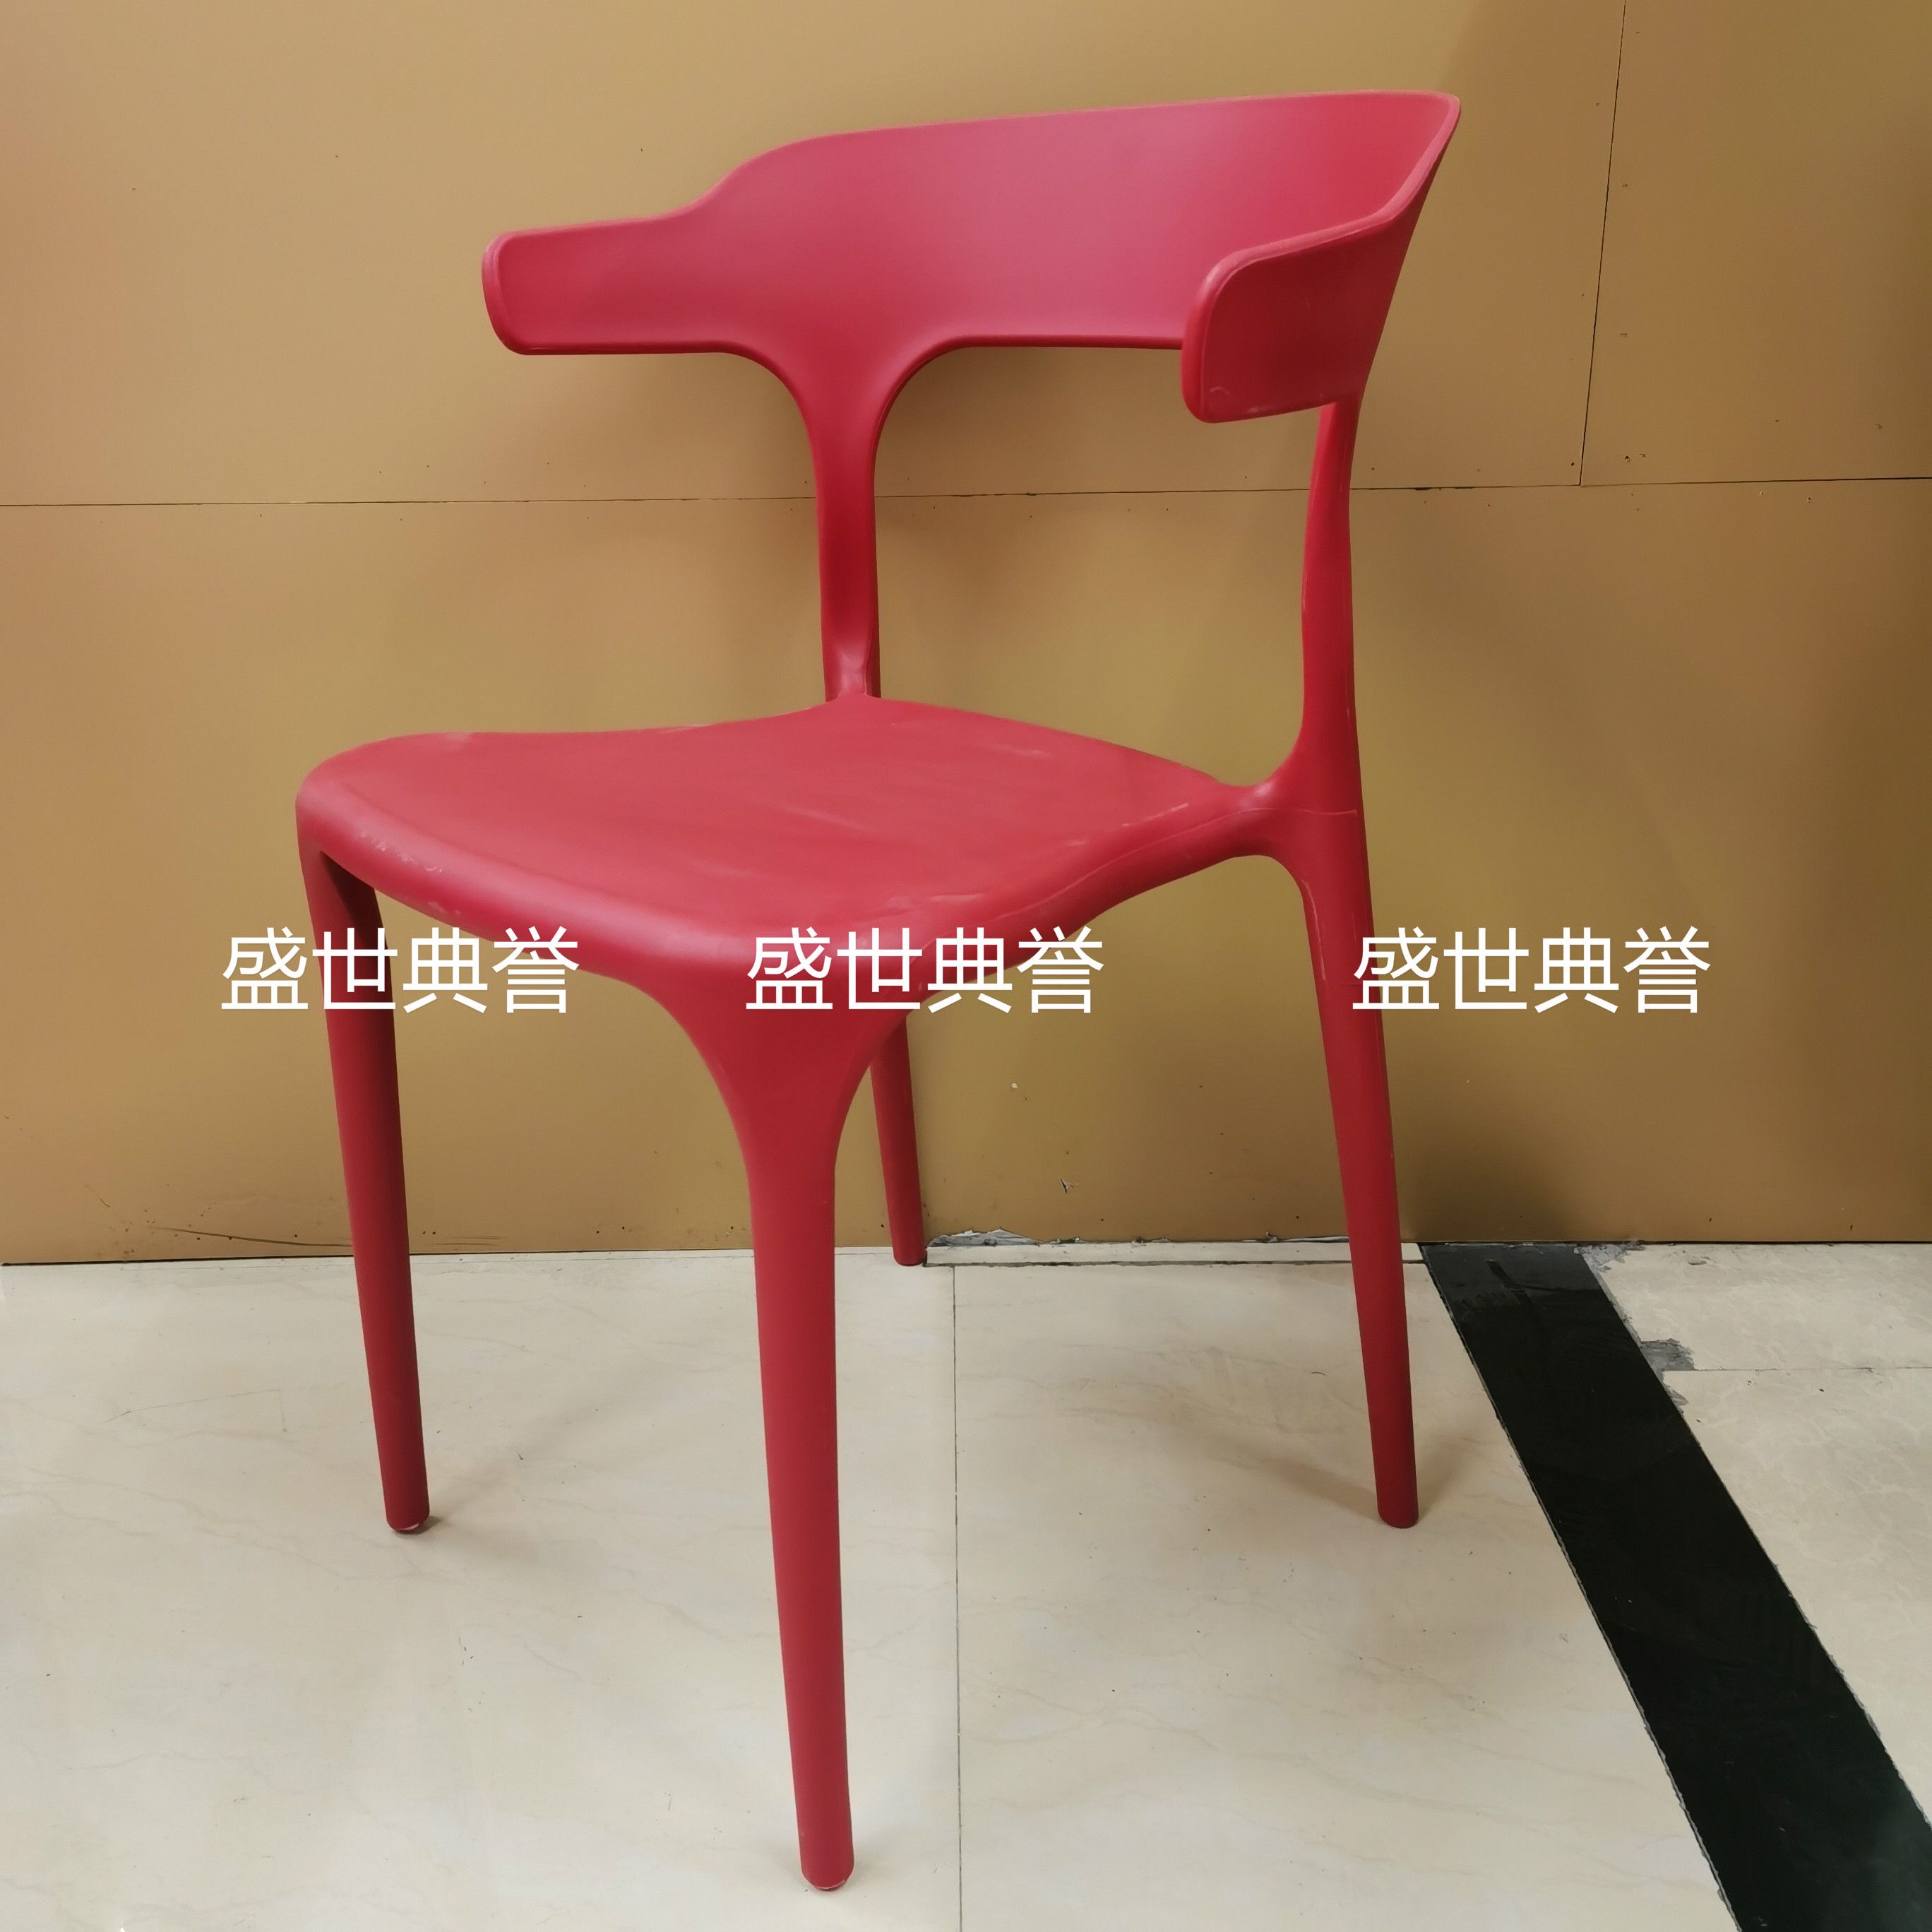 广州外贸批发户外婚礼椅子婚庆塑料折叠椅主题餐厅北欧时尚餐椅